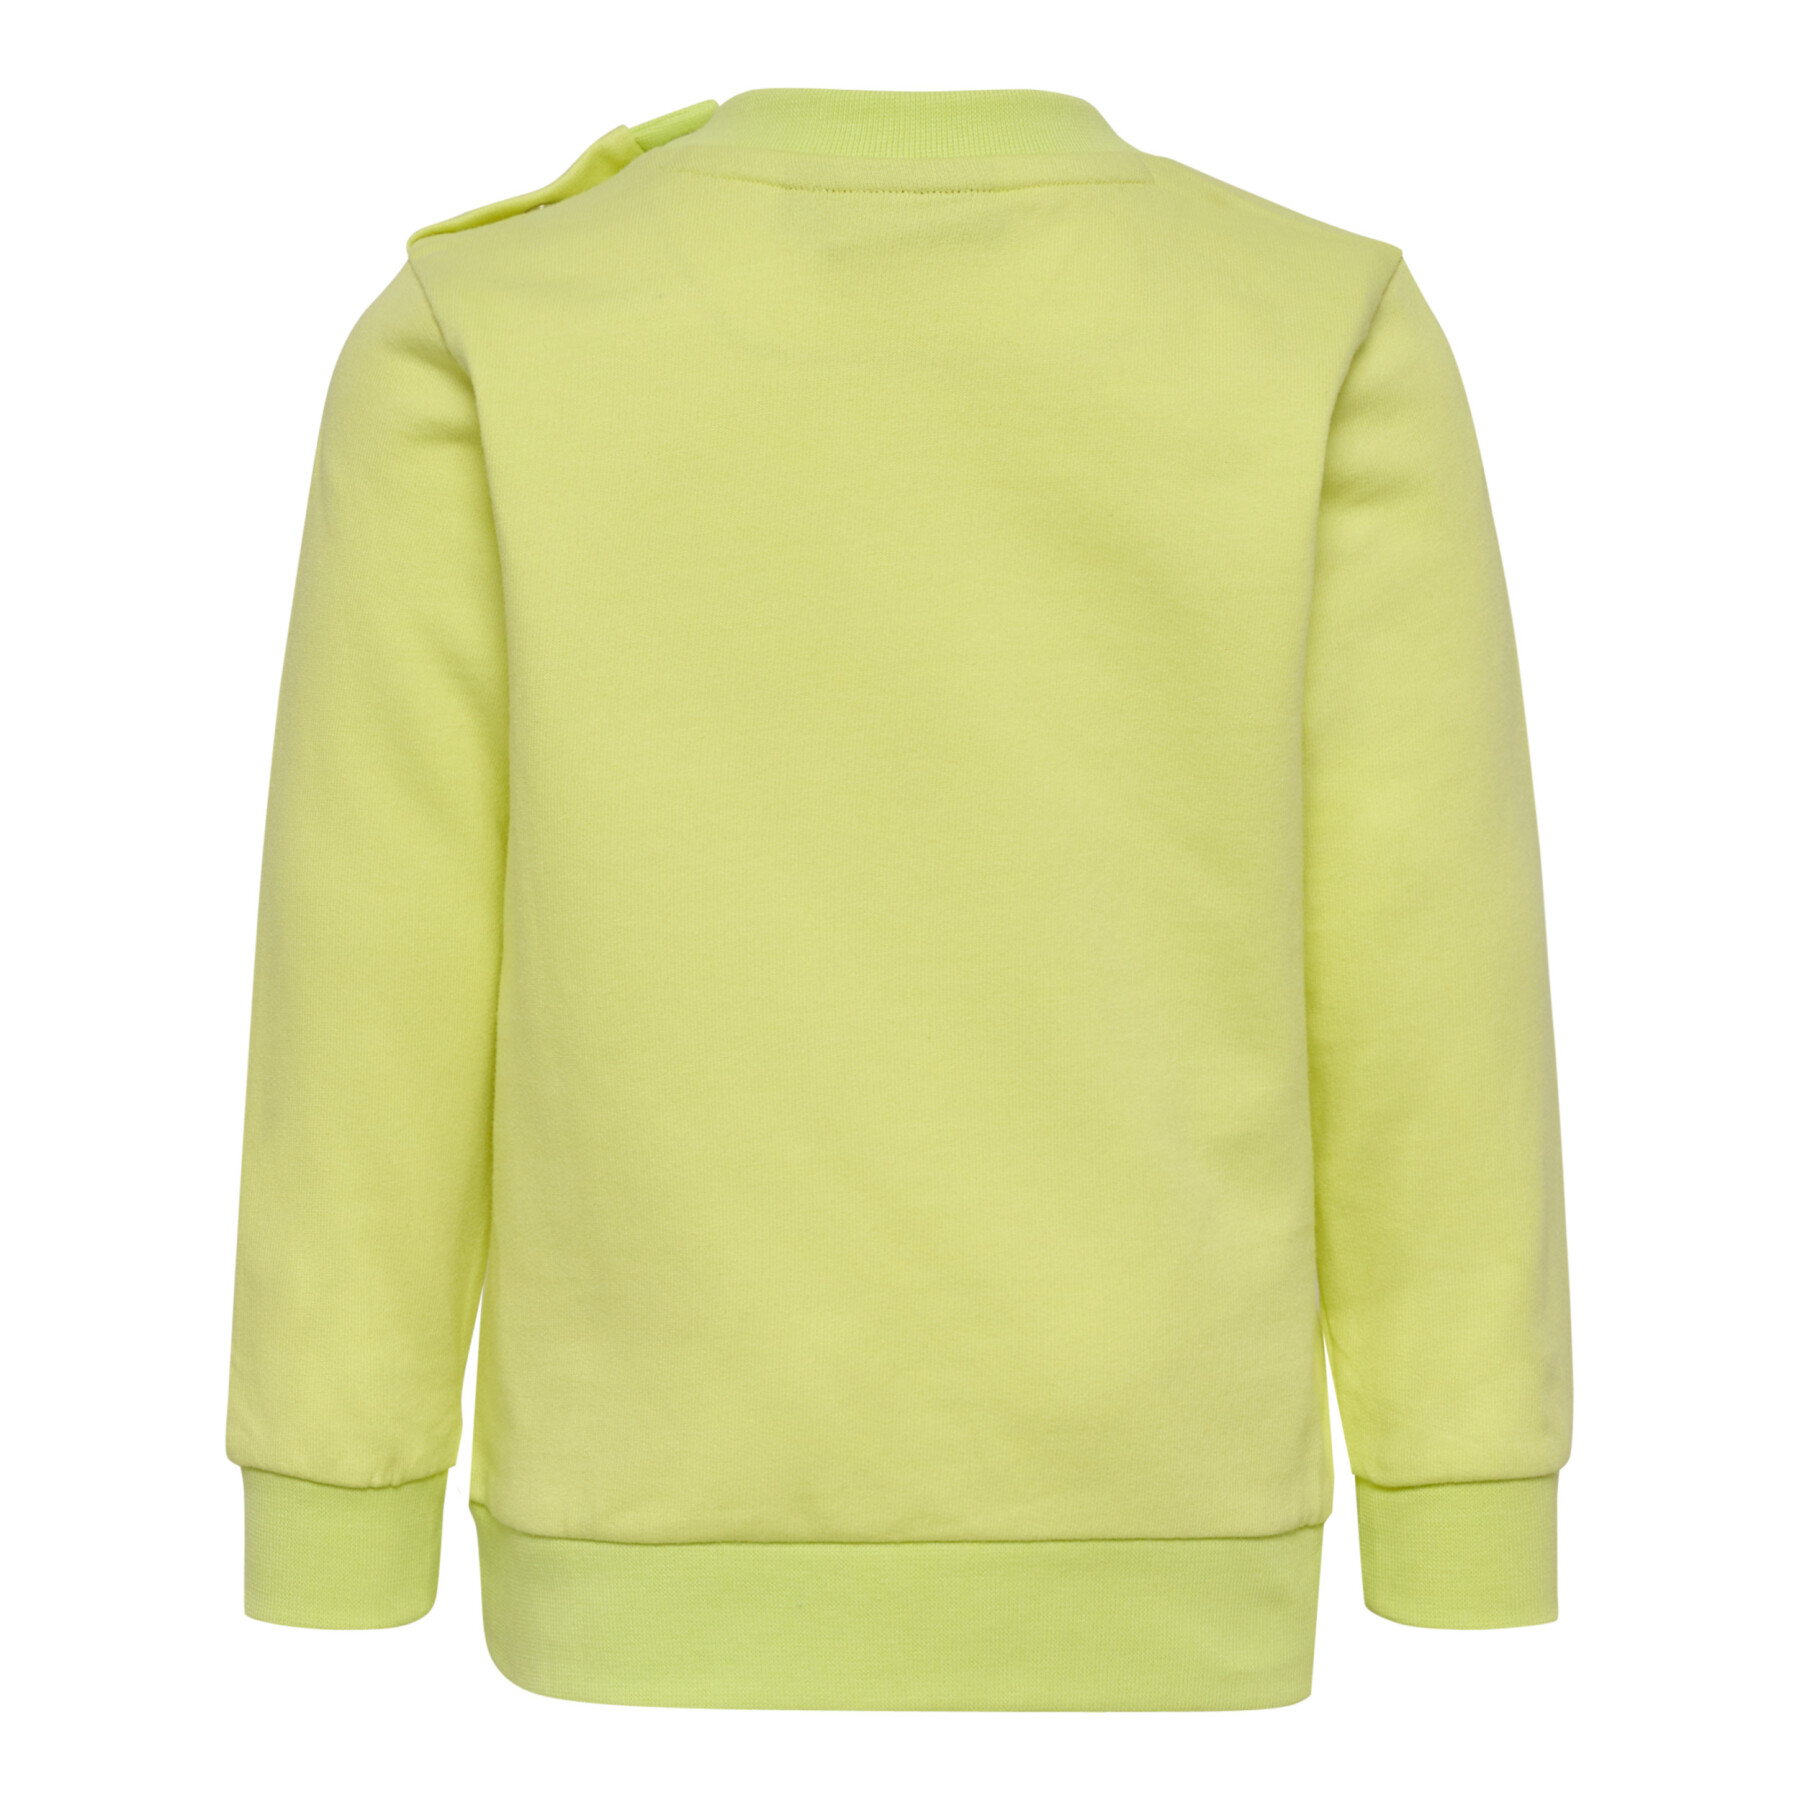 Baby boy sweatshirt Hummel Lime